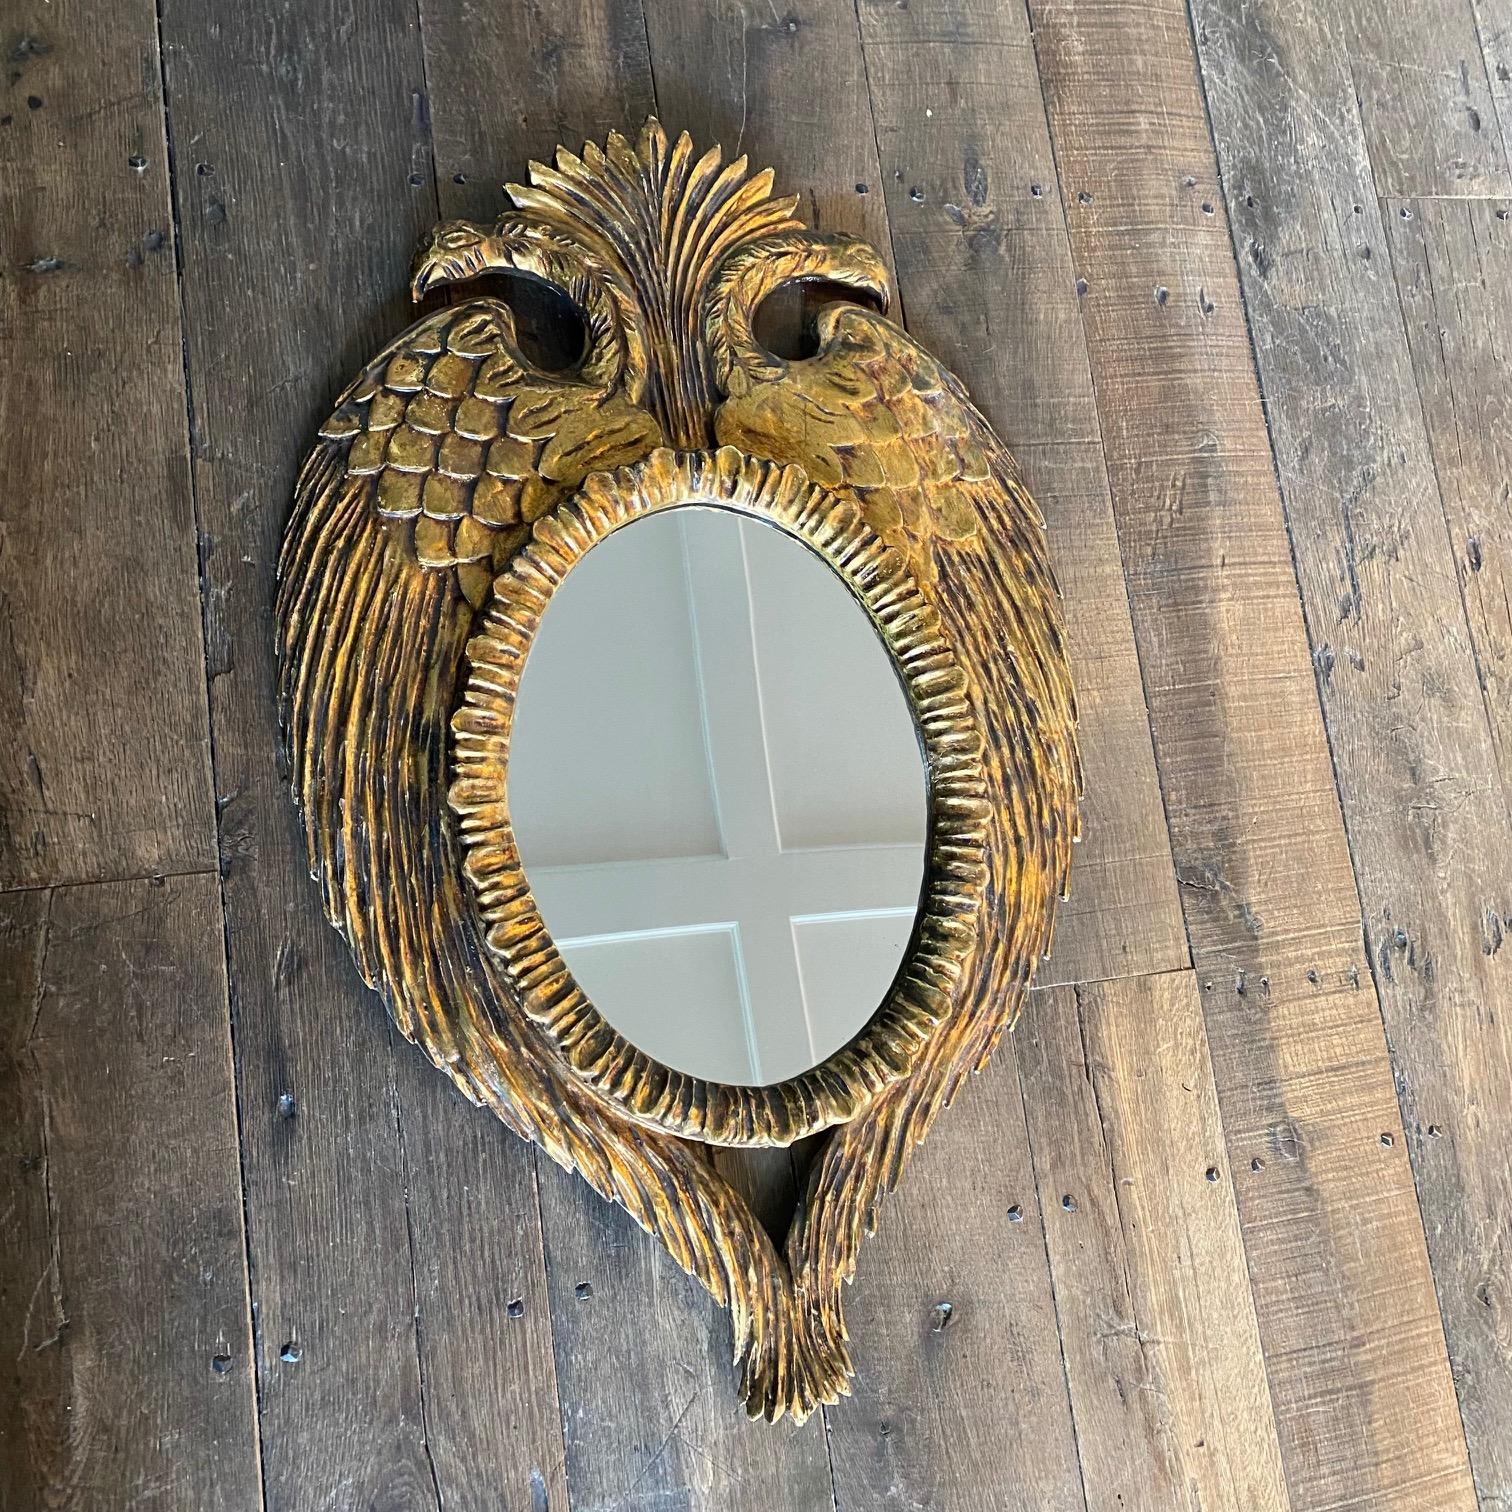 Exquis cadre de miroir en bois doré sculpté français en forme d'aigle bicéphale couronné. Cadre très décoratif avec des aigles bicéphales, des ailes symétriques entourant le miroir central ovale. Ce miroir en bois sculpté à la main est doré à la